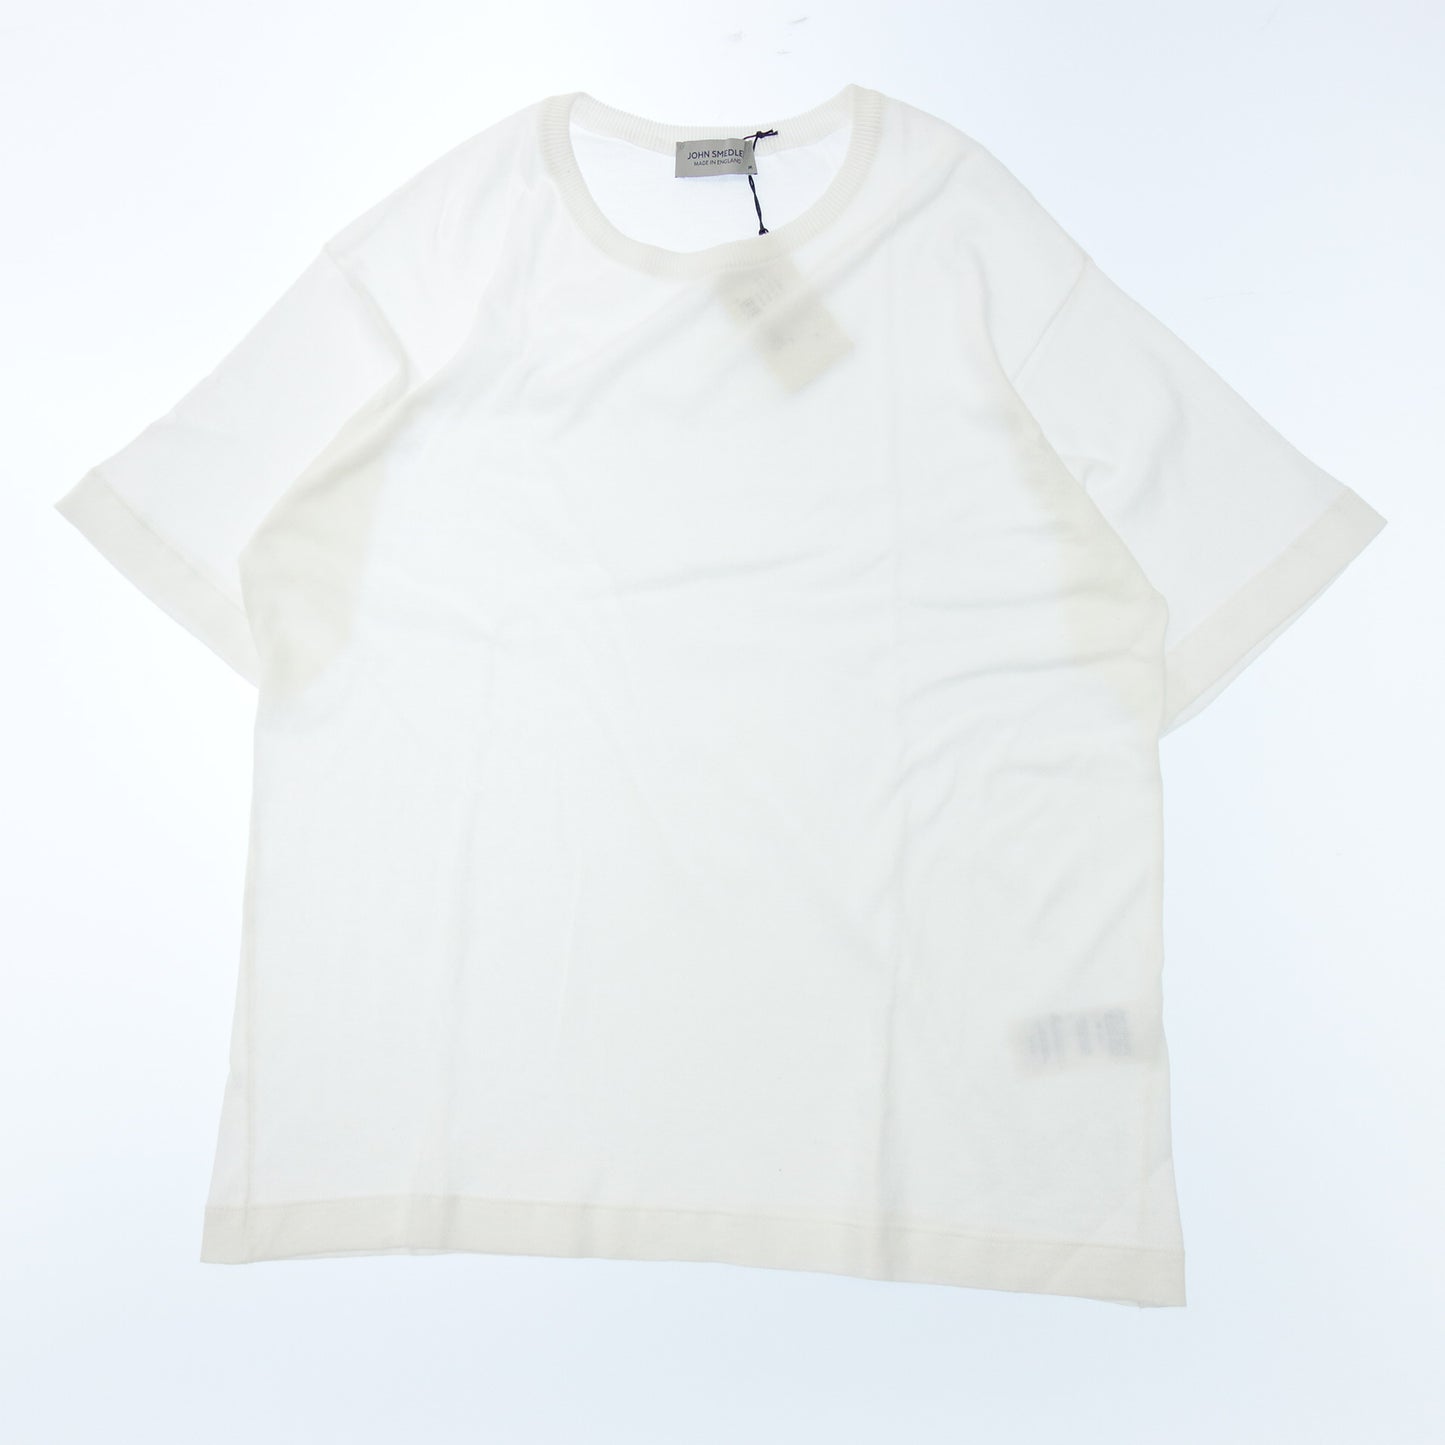 ジョンスメドレー Tシャツ シーアイランドコットン 30G クルーネック メンズ ホワイト M JOHN SMEDLEY【AFB1】【中古】